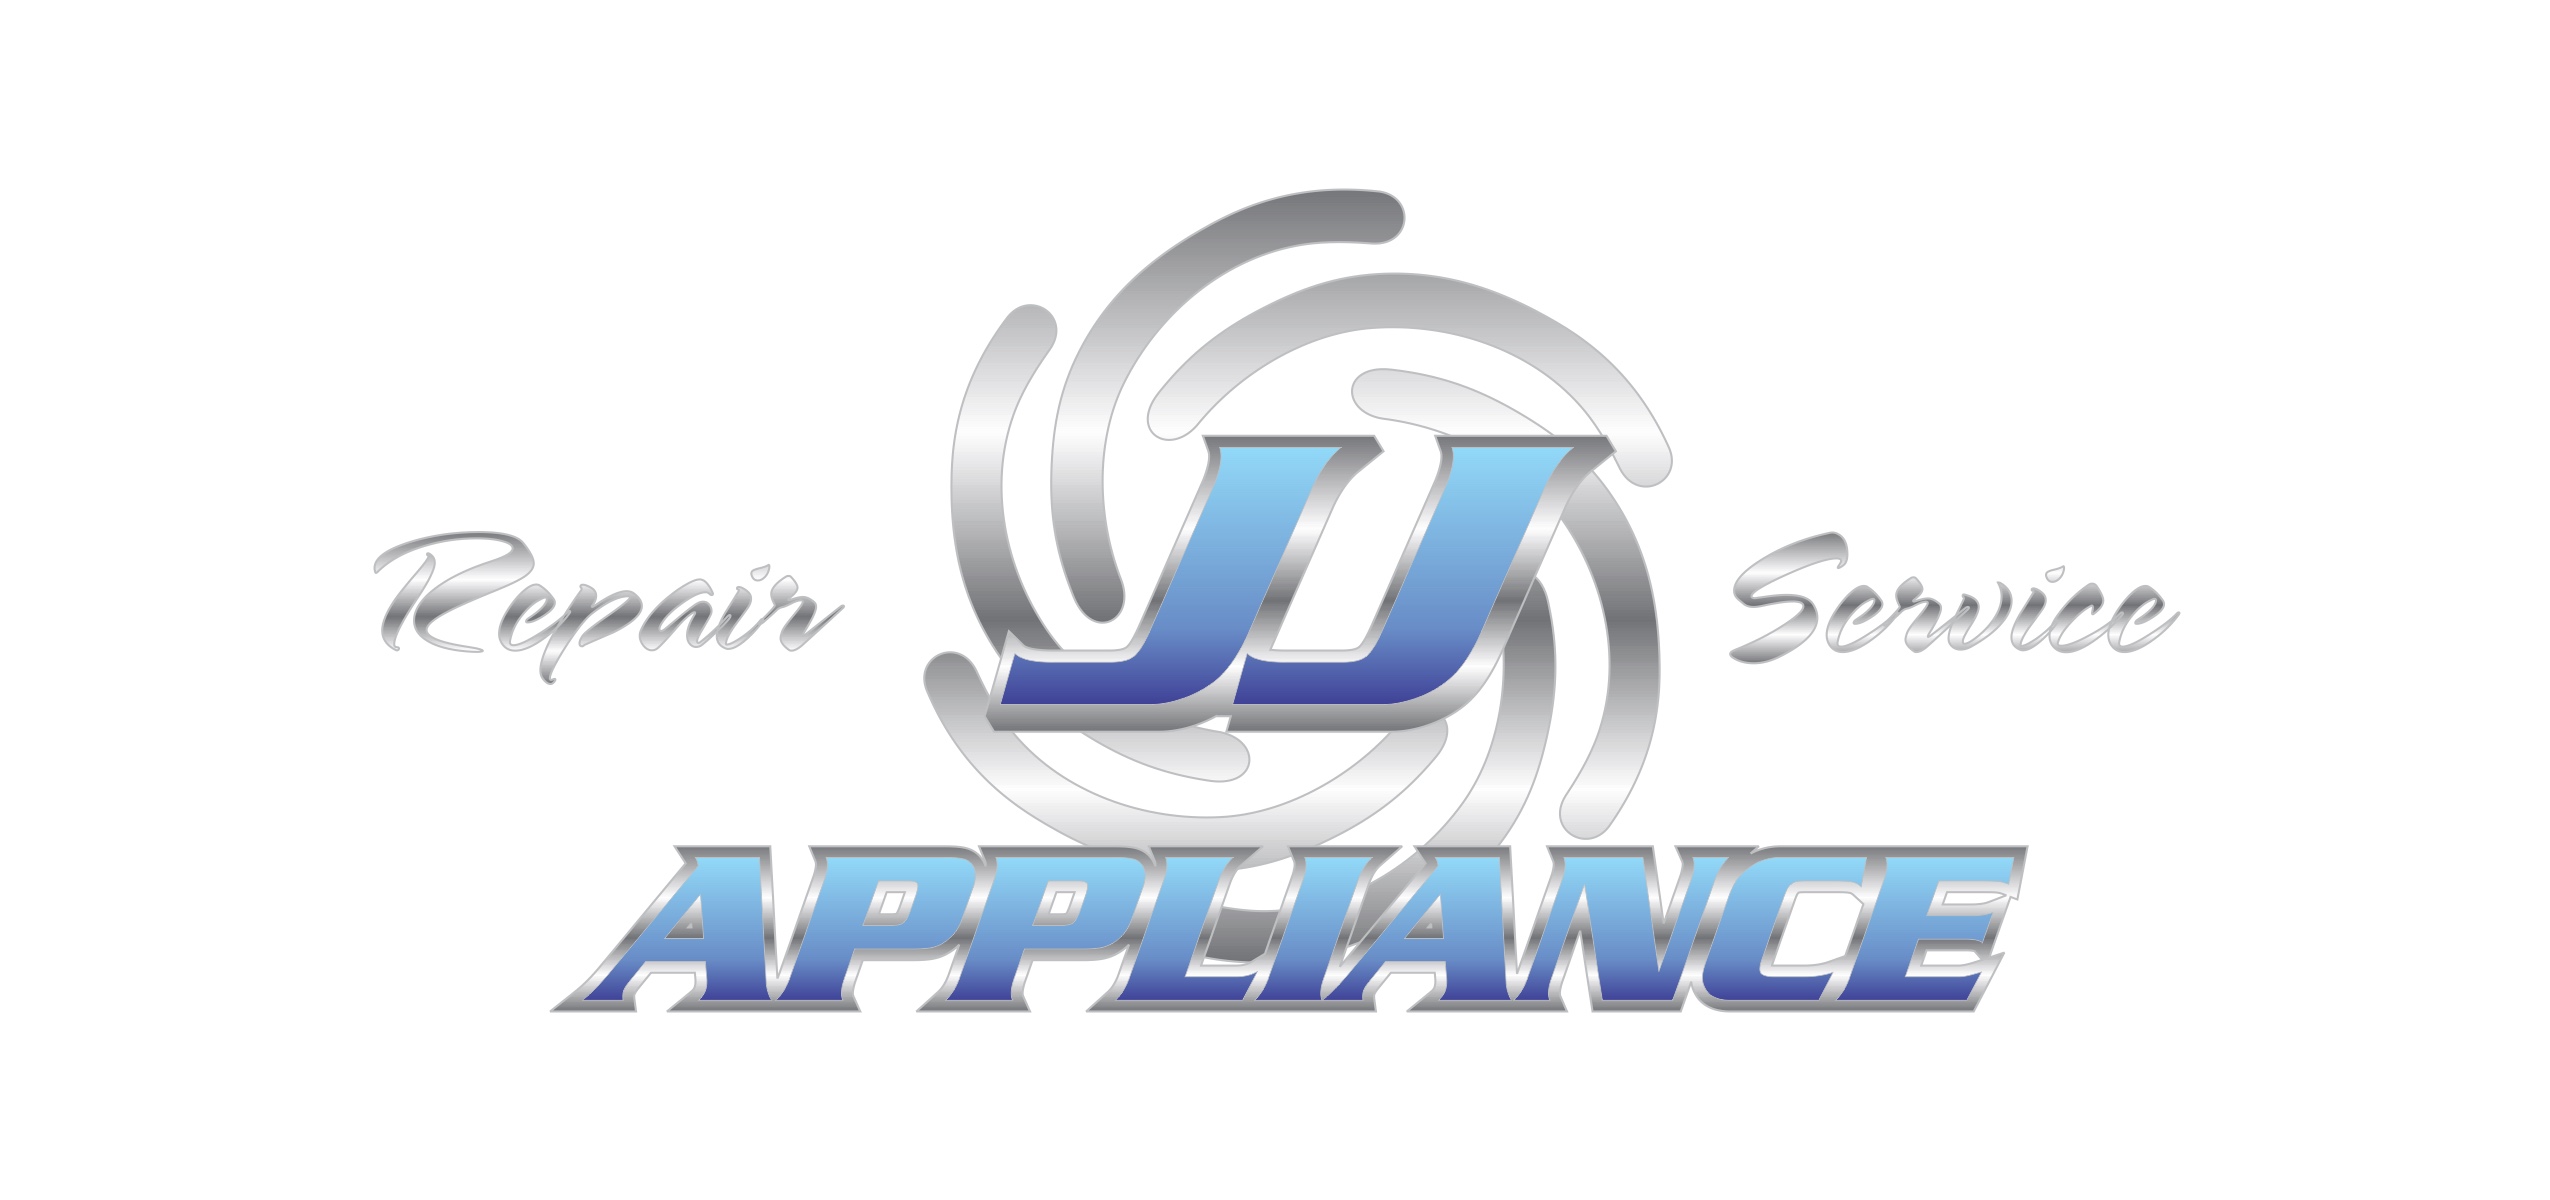 JJ Appliance Repair